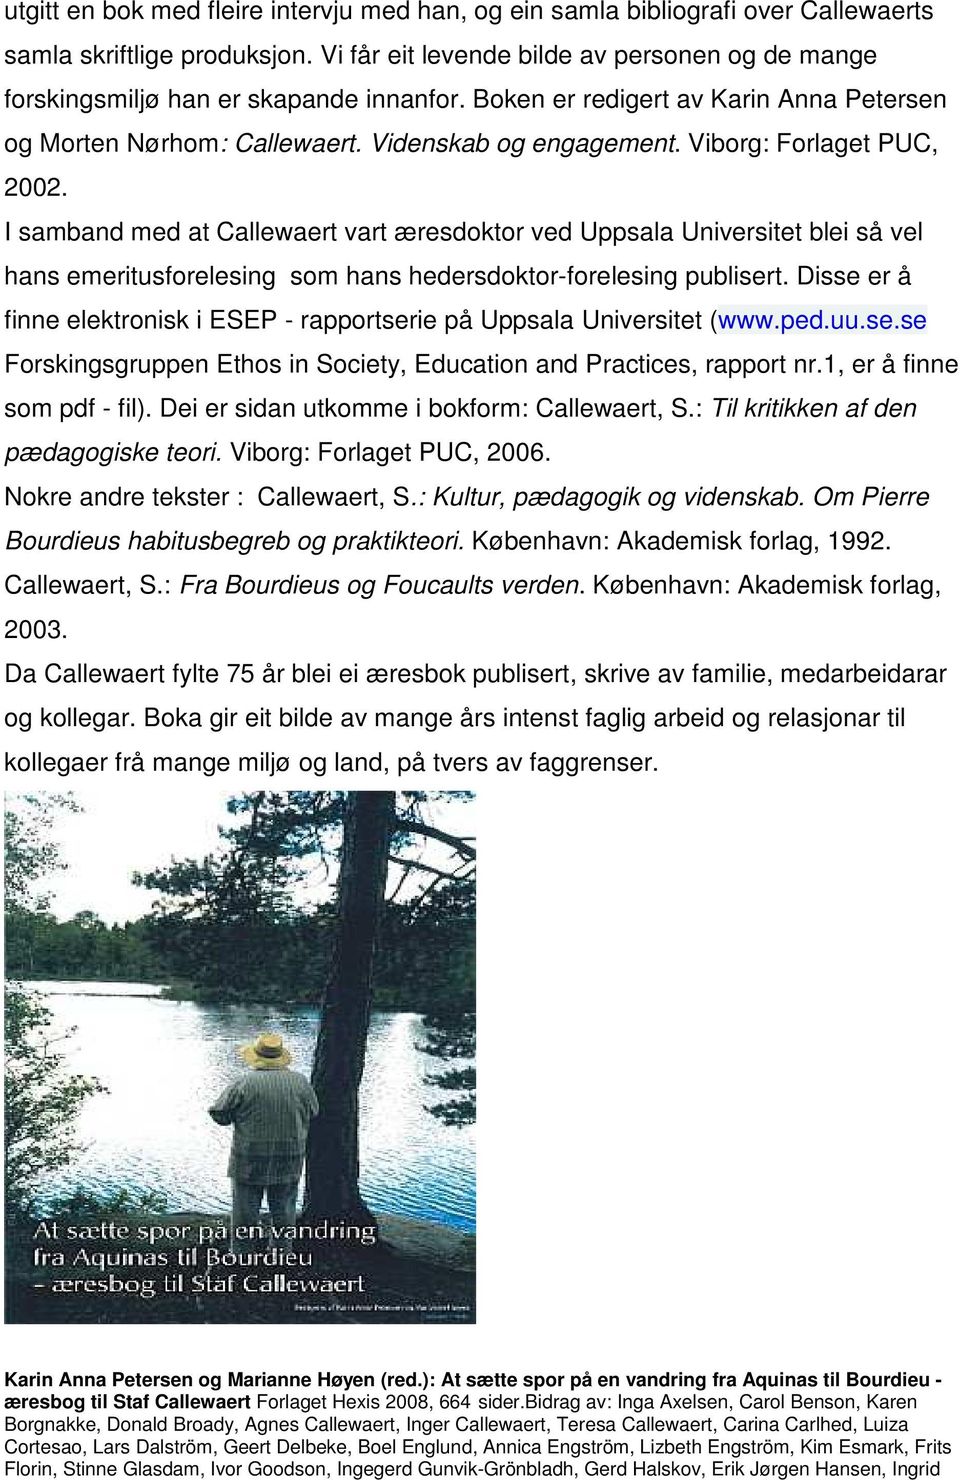 Viborg: Forlaget PUC, 2002. I samband med at Callewaert vart æresdoktor ved Uppsala Universitet blei så vel hans emeritusforelesing som hans hedersdoktor-forelesing publisert.